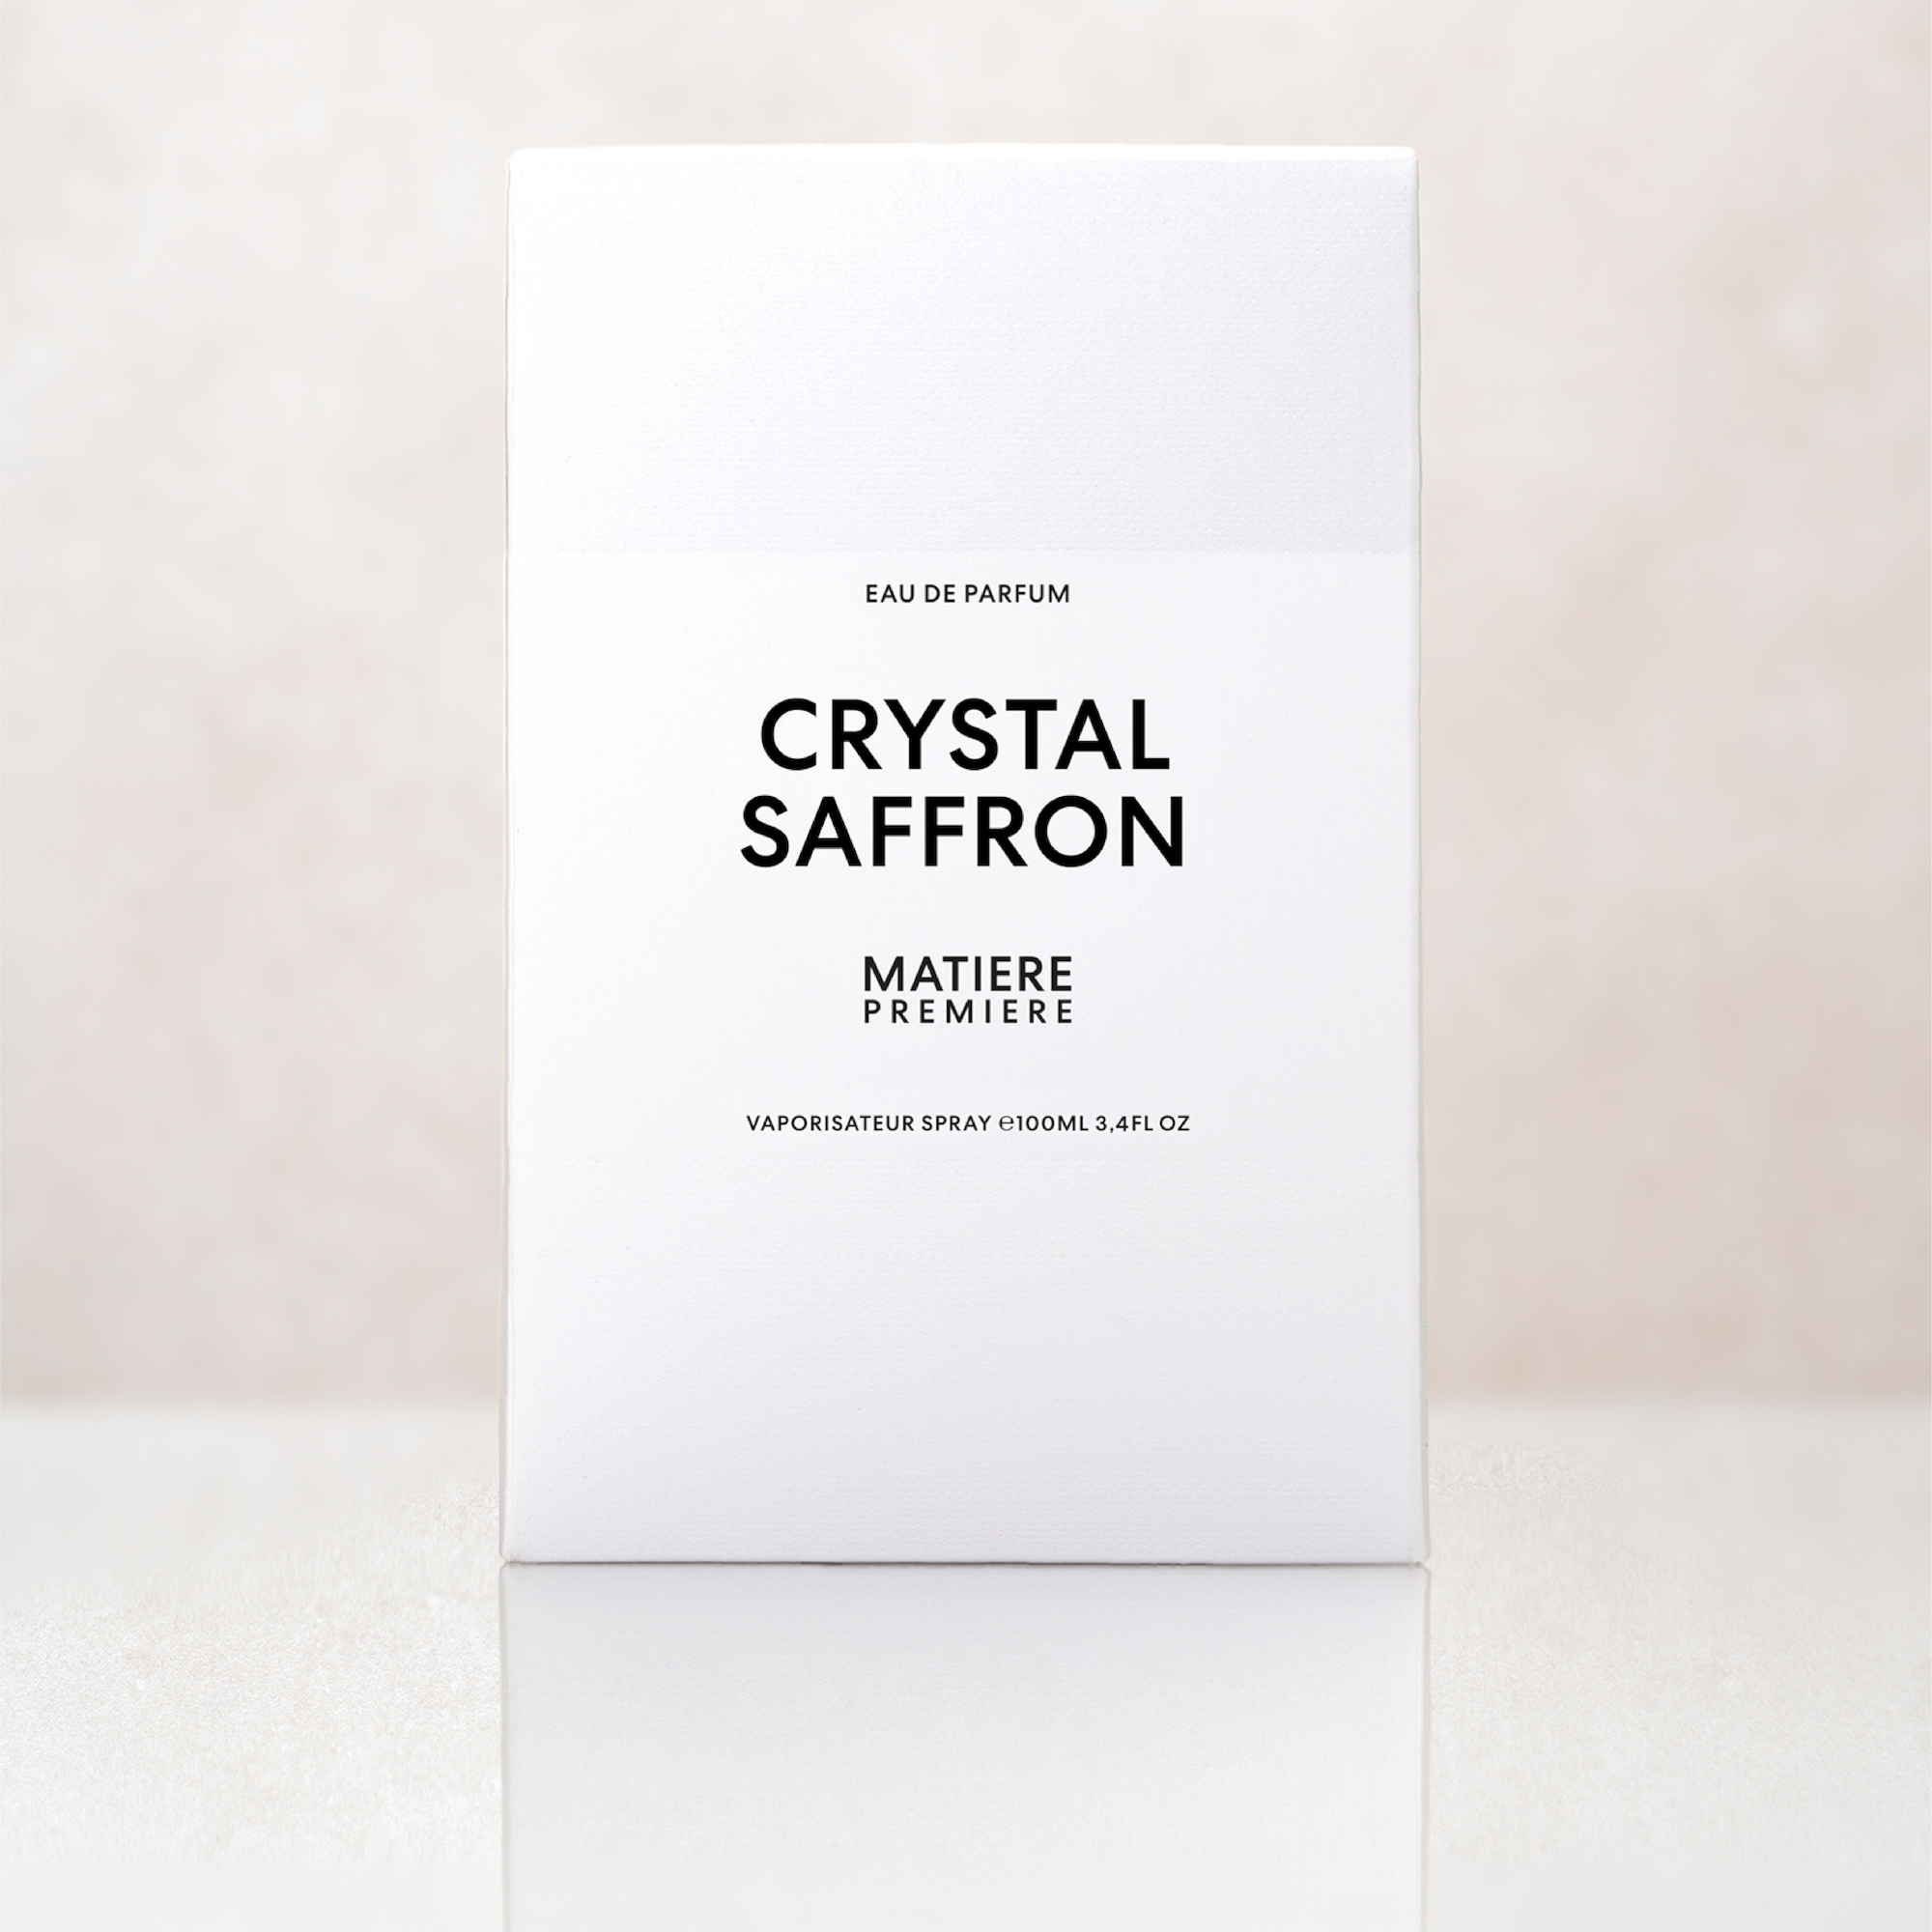 Crystal Saffron